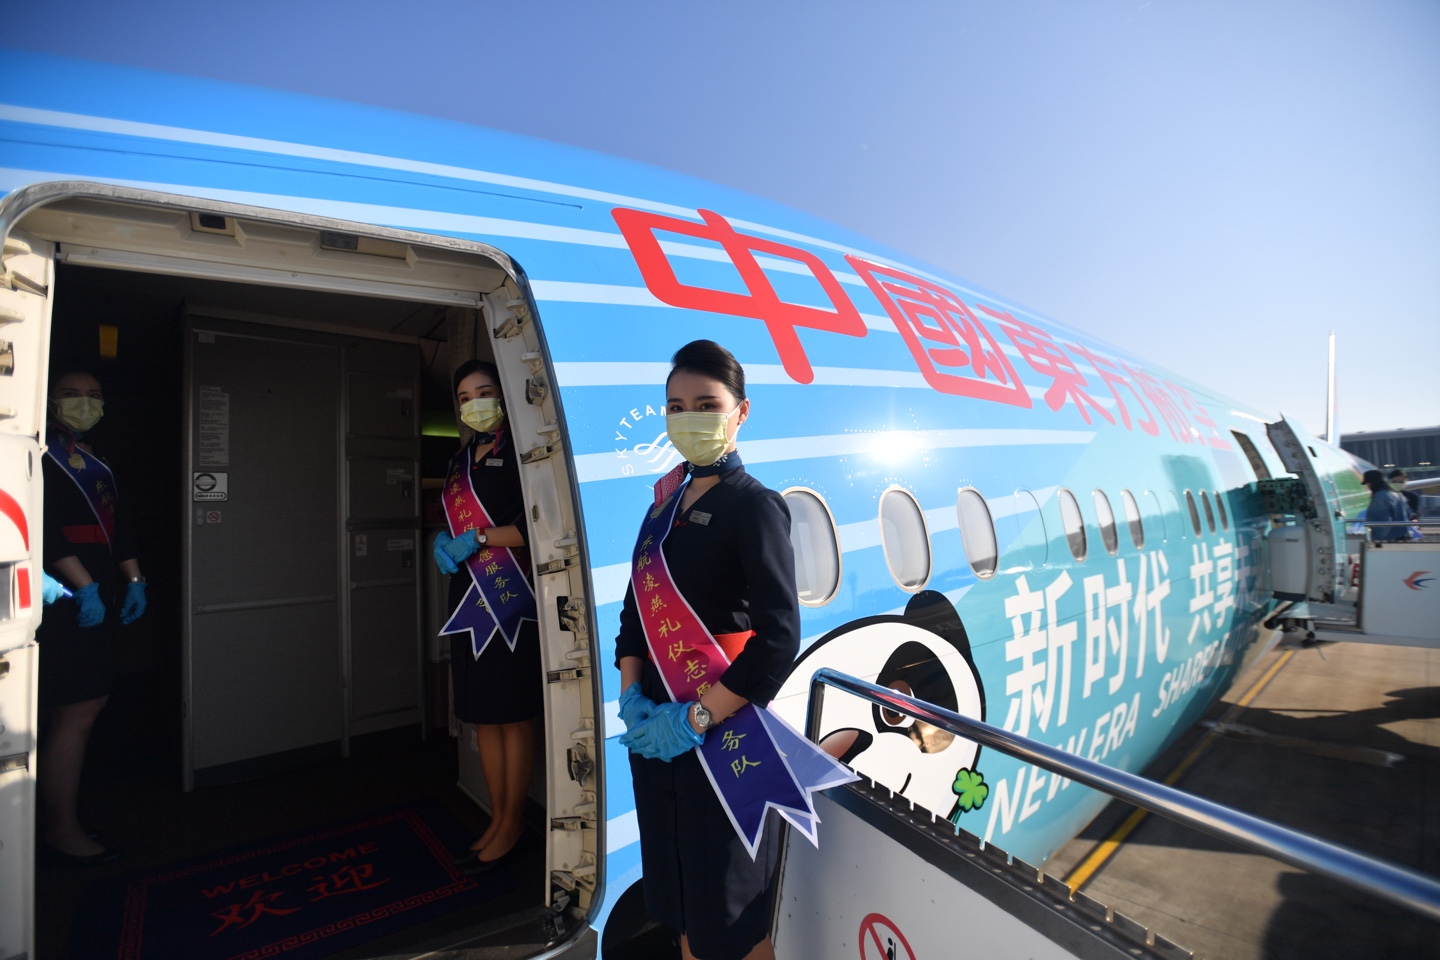 大兴机场今天满一周岁 东航全球首架“进博号”从上海飞去“庆生”发布“大兴随心飞